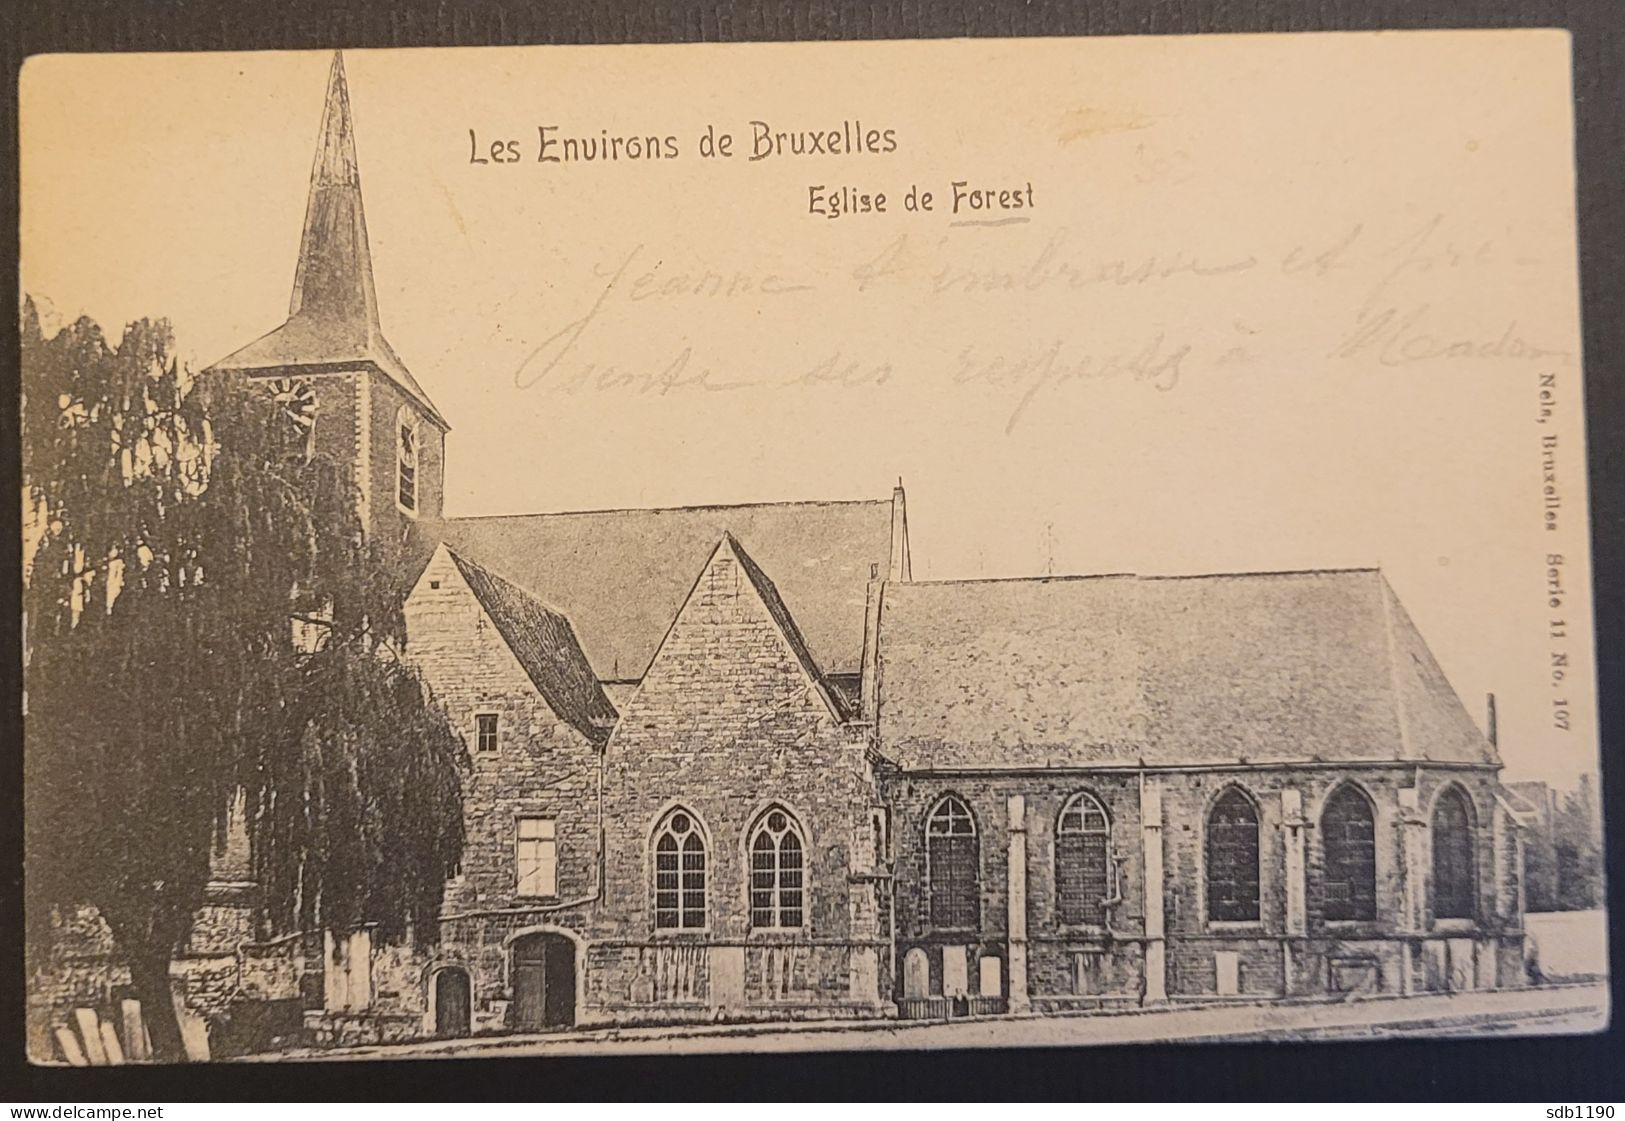 Les Environs De Bruxelles - Eglise De Forest (Nels, Bruxelles, Série 11 No. 107), Circulée 1906 - Forest - Vorst